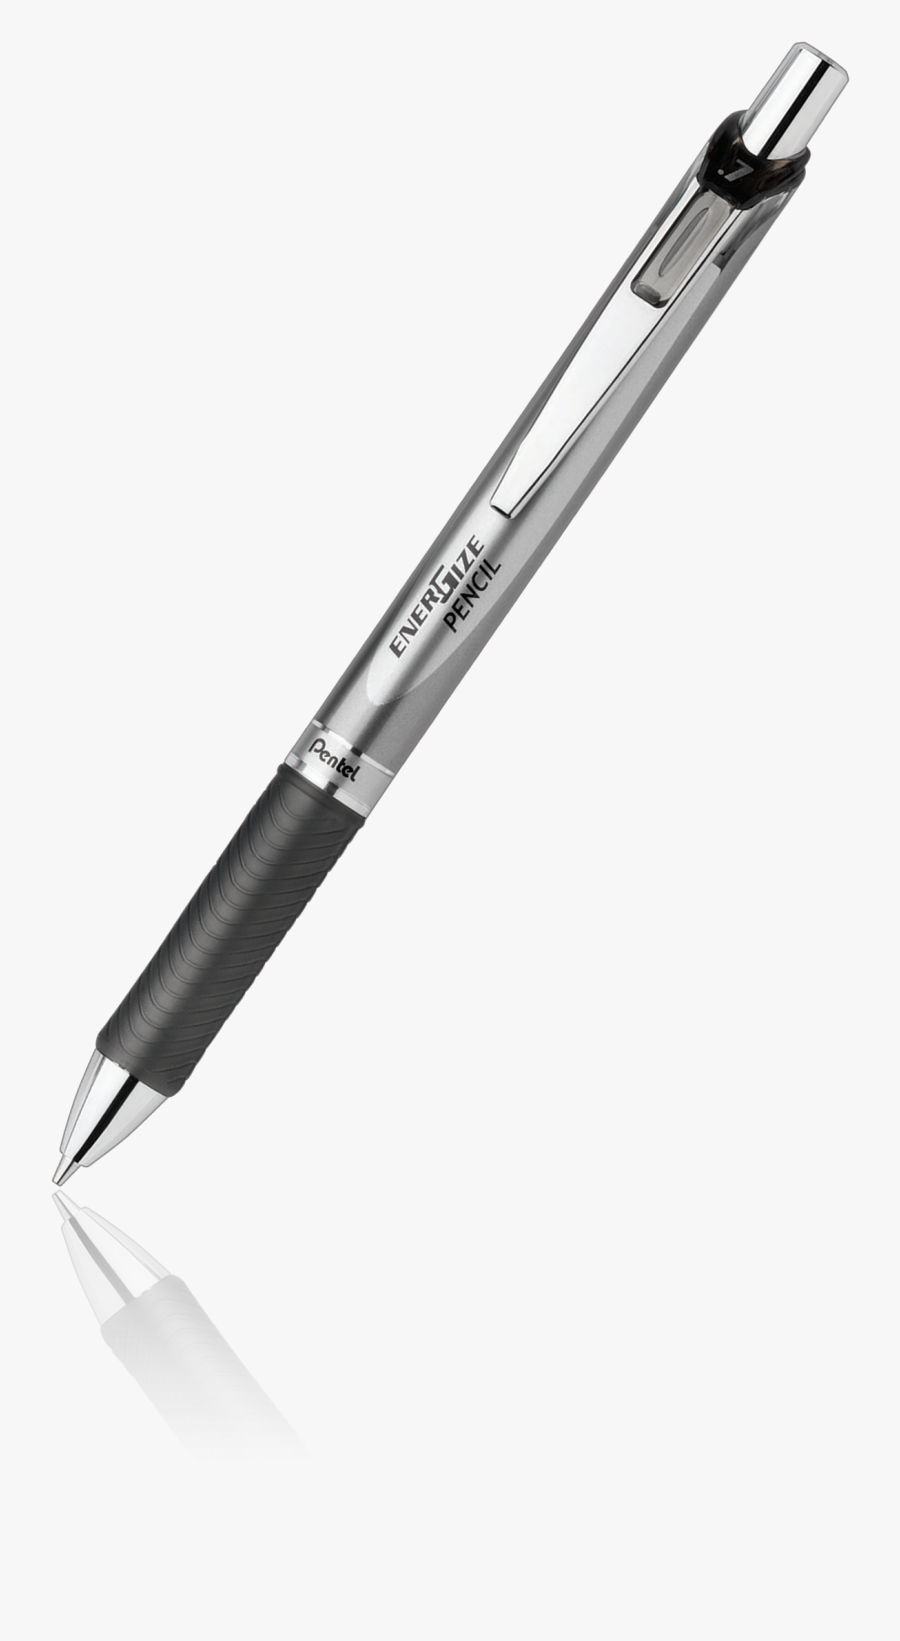 Clipart Pen Lead Pencil - Pentel Energel Black, Transparent Clipart